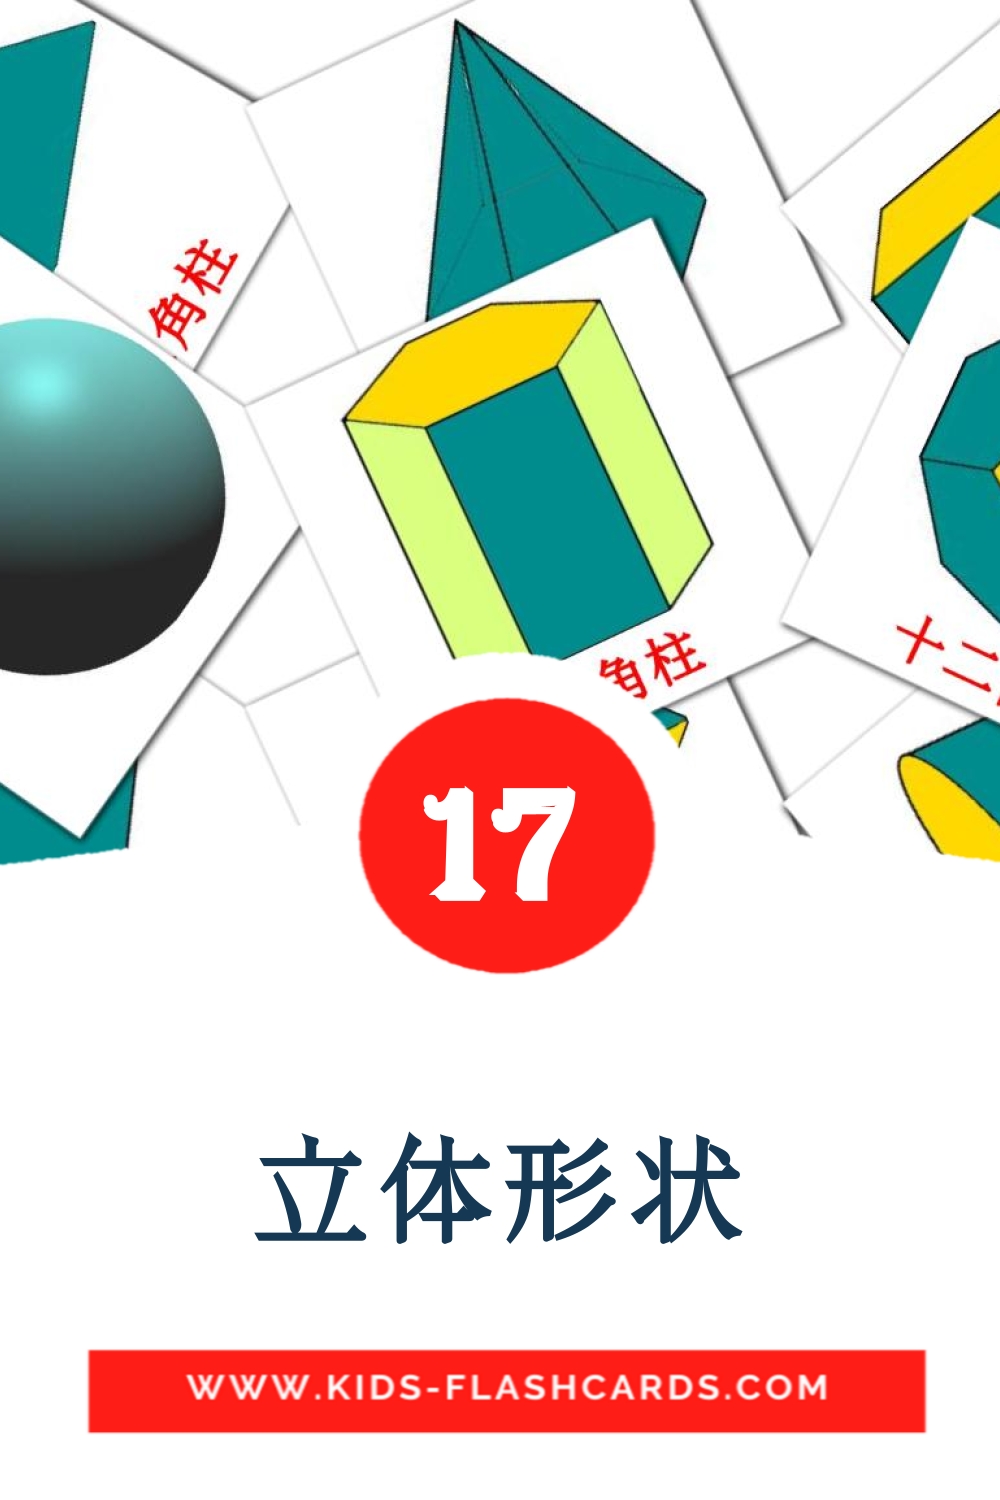 17 cartes illustrées de 立体形状 pour la maternelle en chinois(traditionnel)